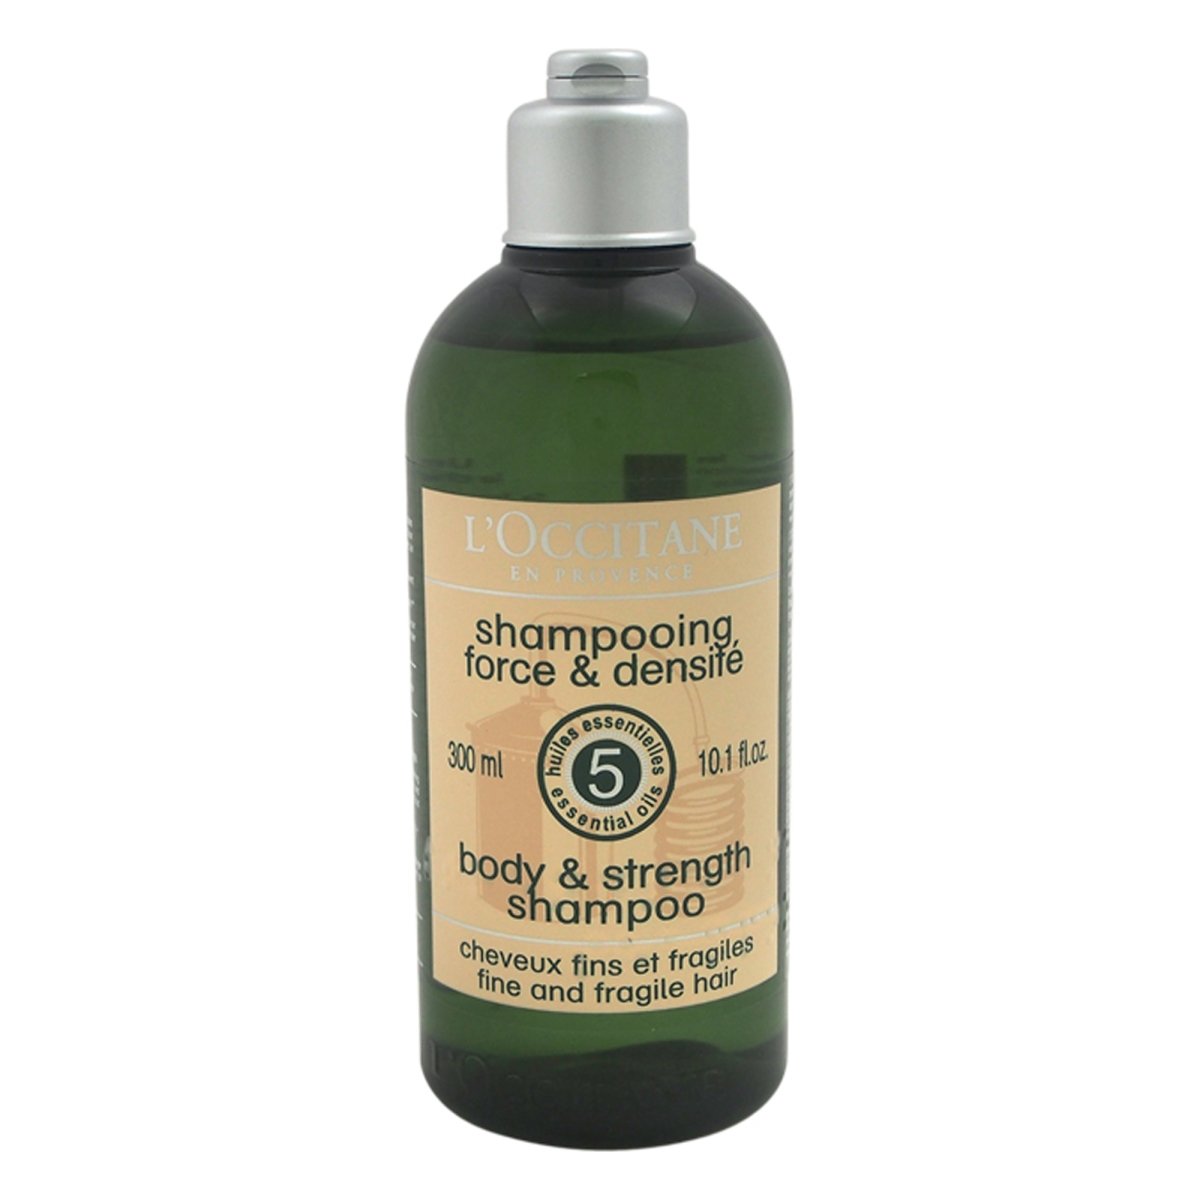 U-hc-10799 10.1 Oz Unisex Aromachologie Body & Strength Shampoo